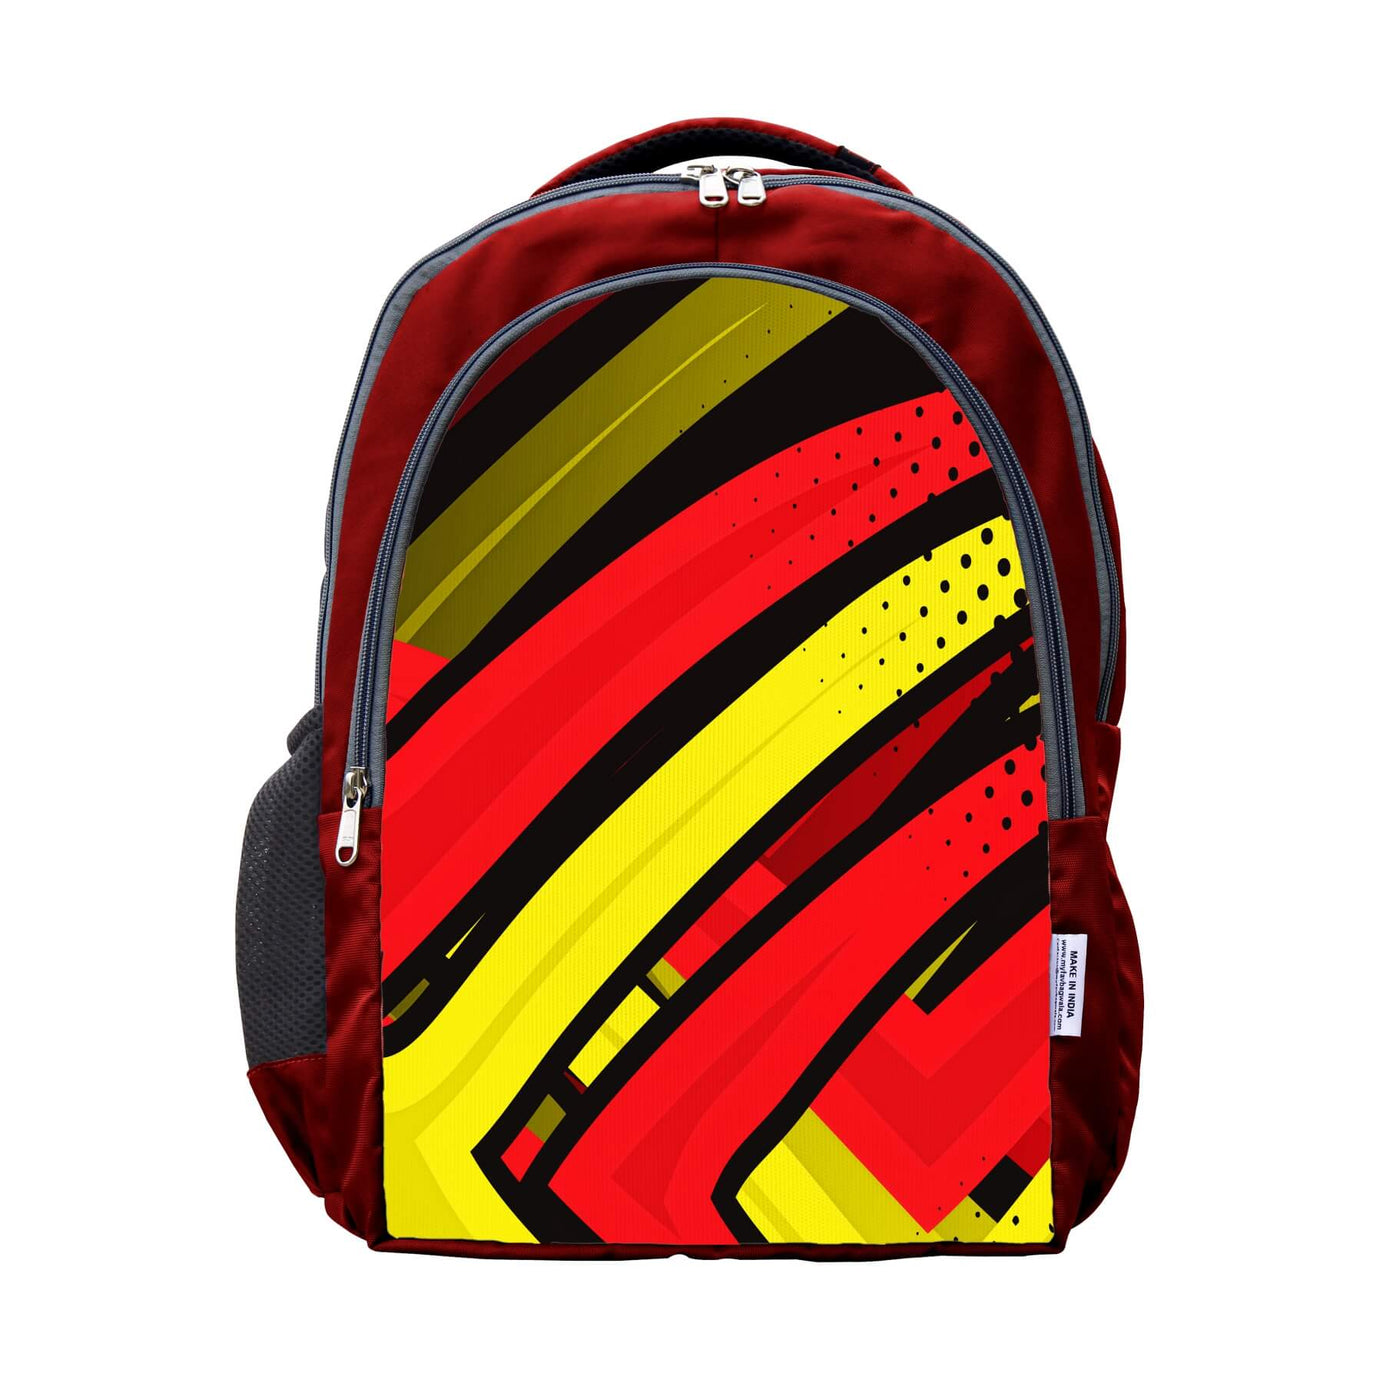 My Fav Multi Striped Laptop Backpack College / School Bag for Boys & Girls